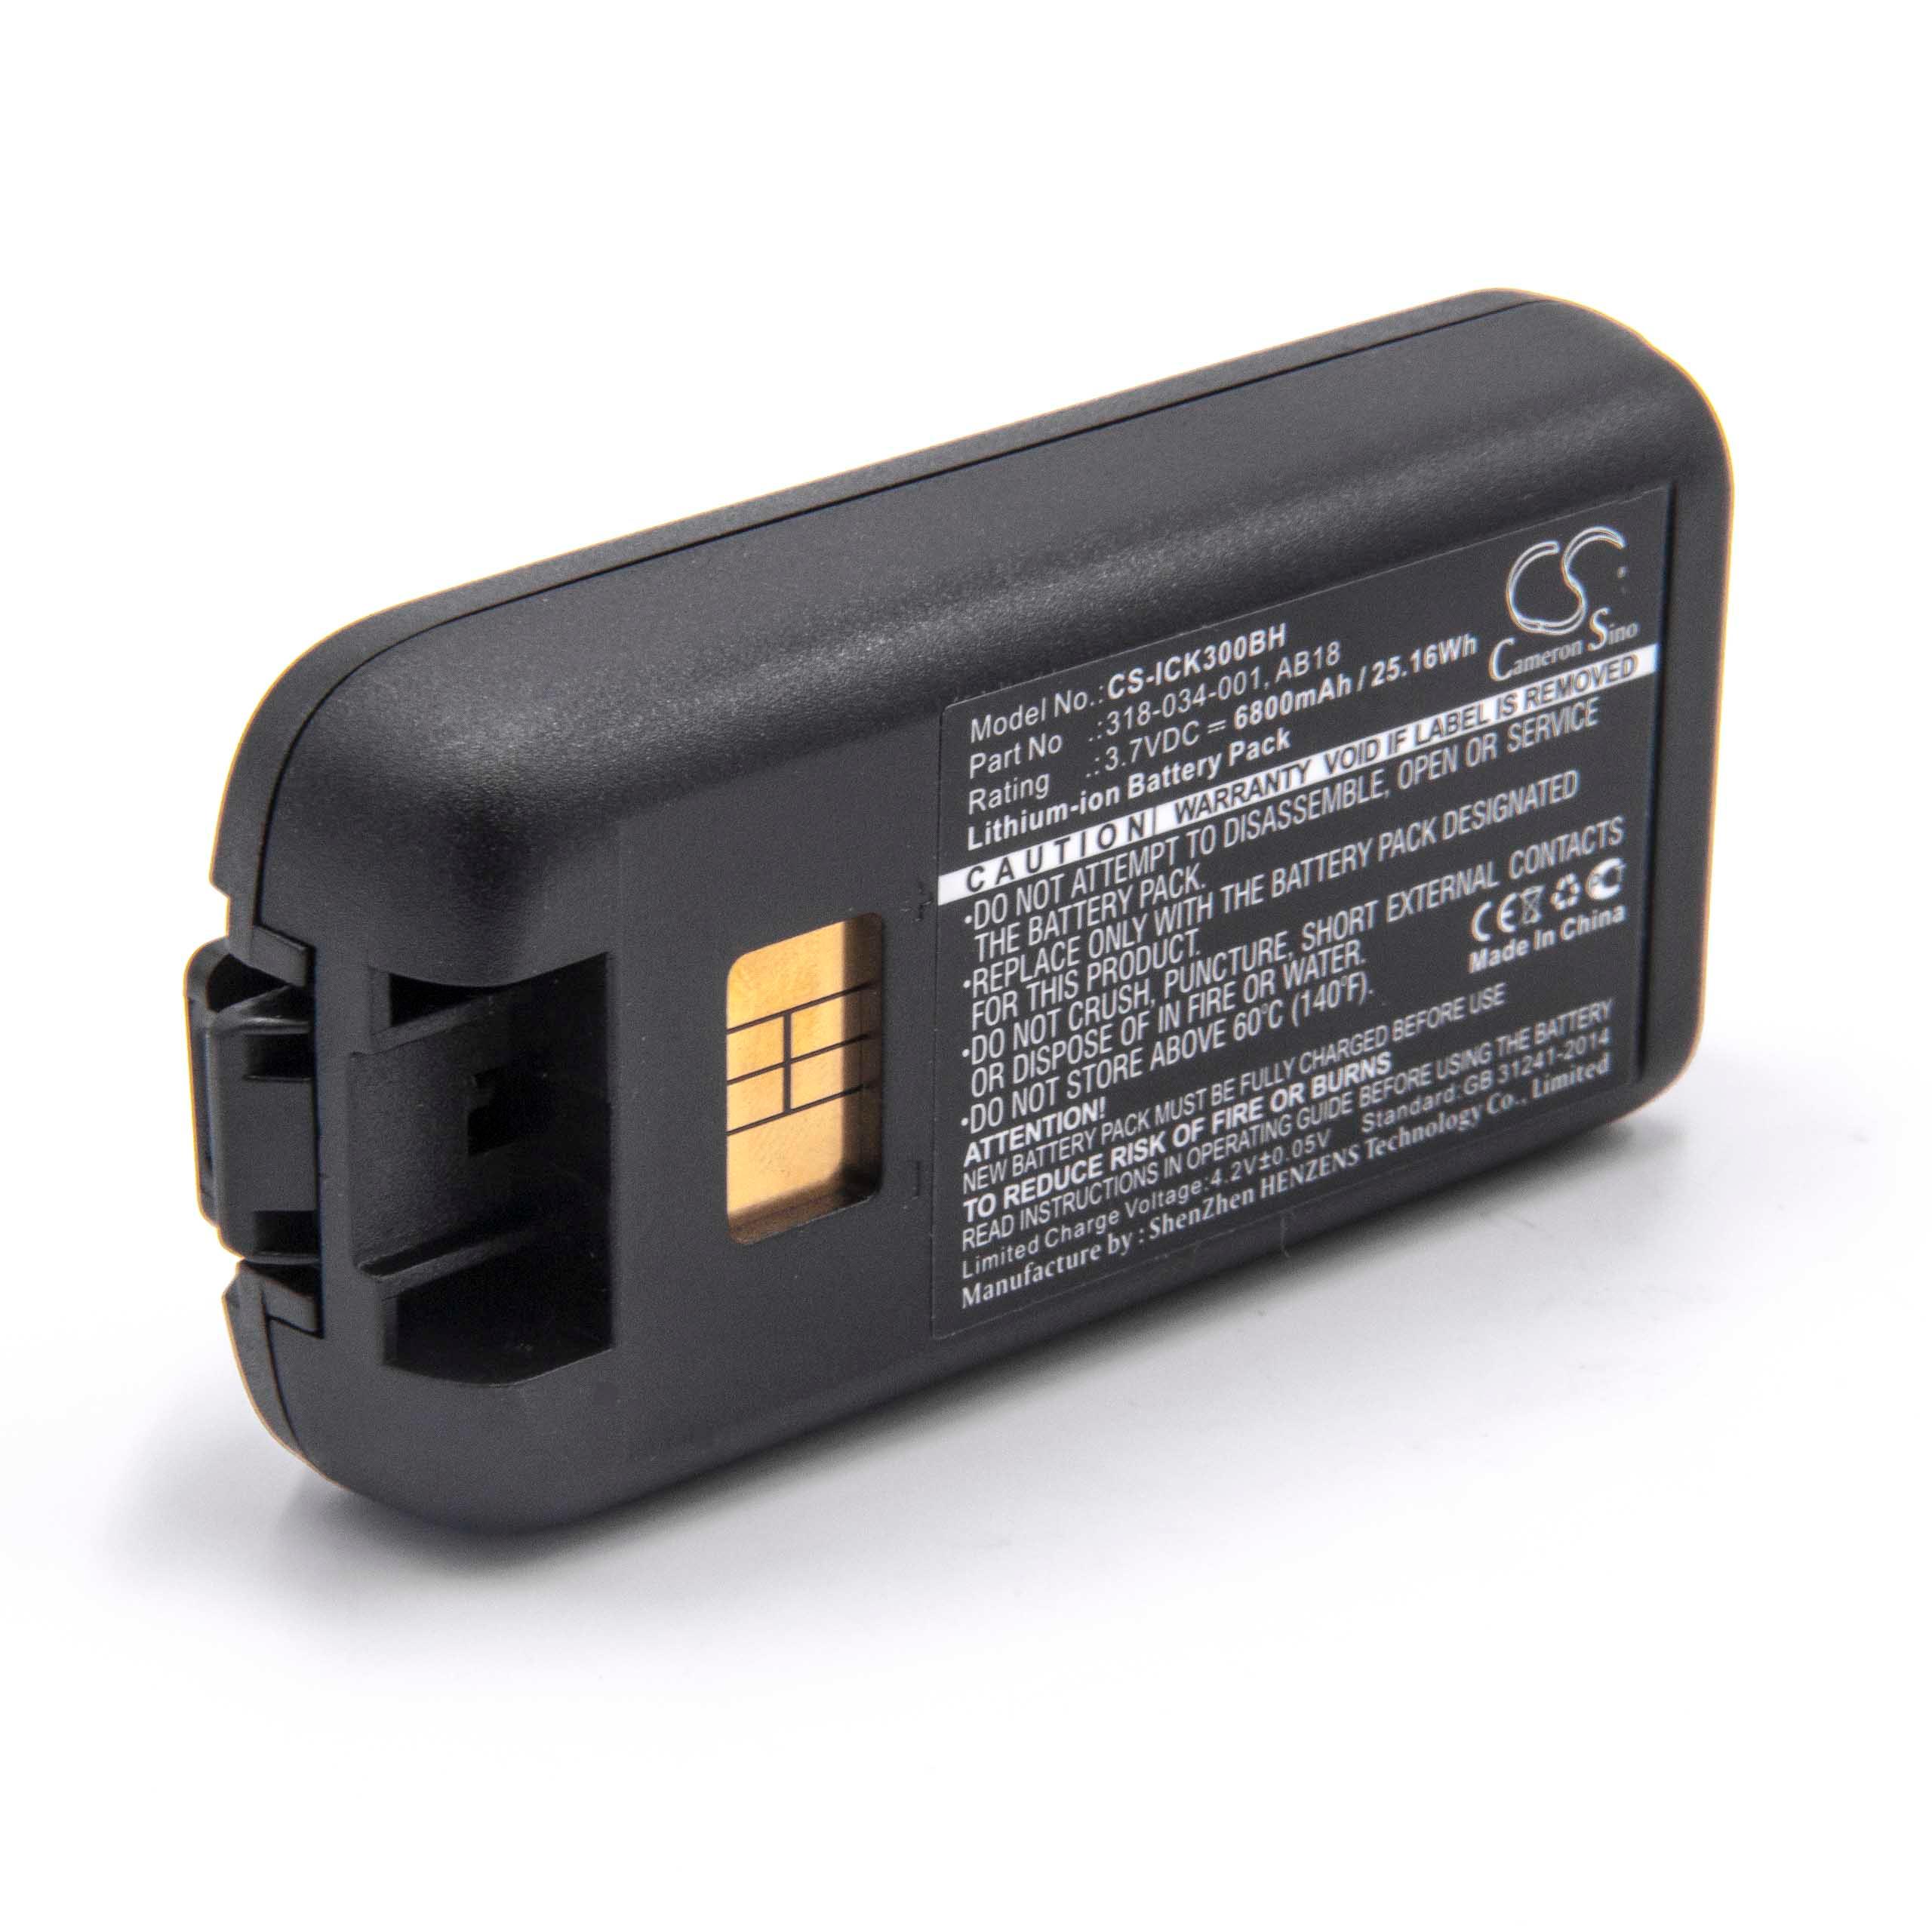 Batterie remplace Intermec 318-033-021, 318-033-001 pour scanner de code-barre - 6800mAh 3,7V Li-ion